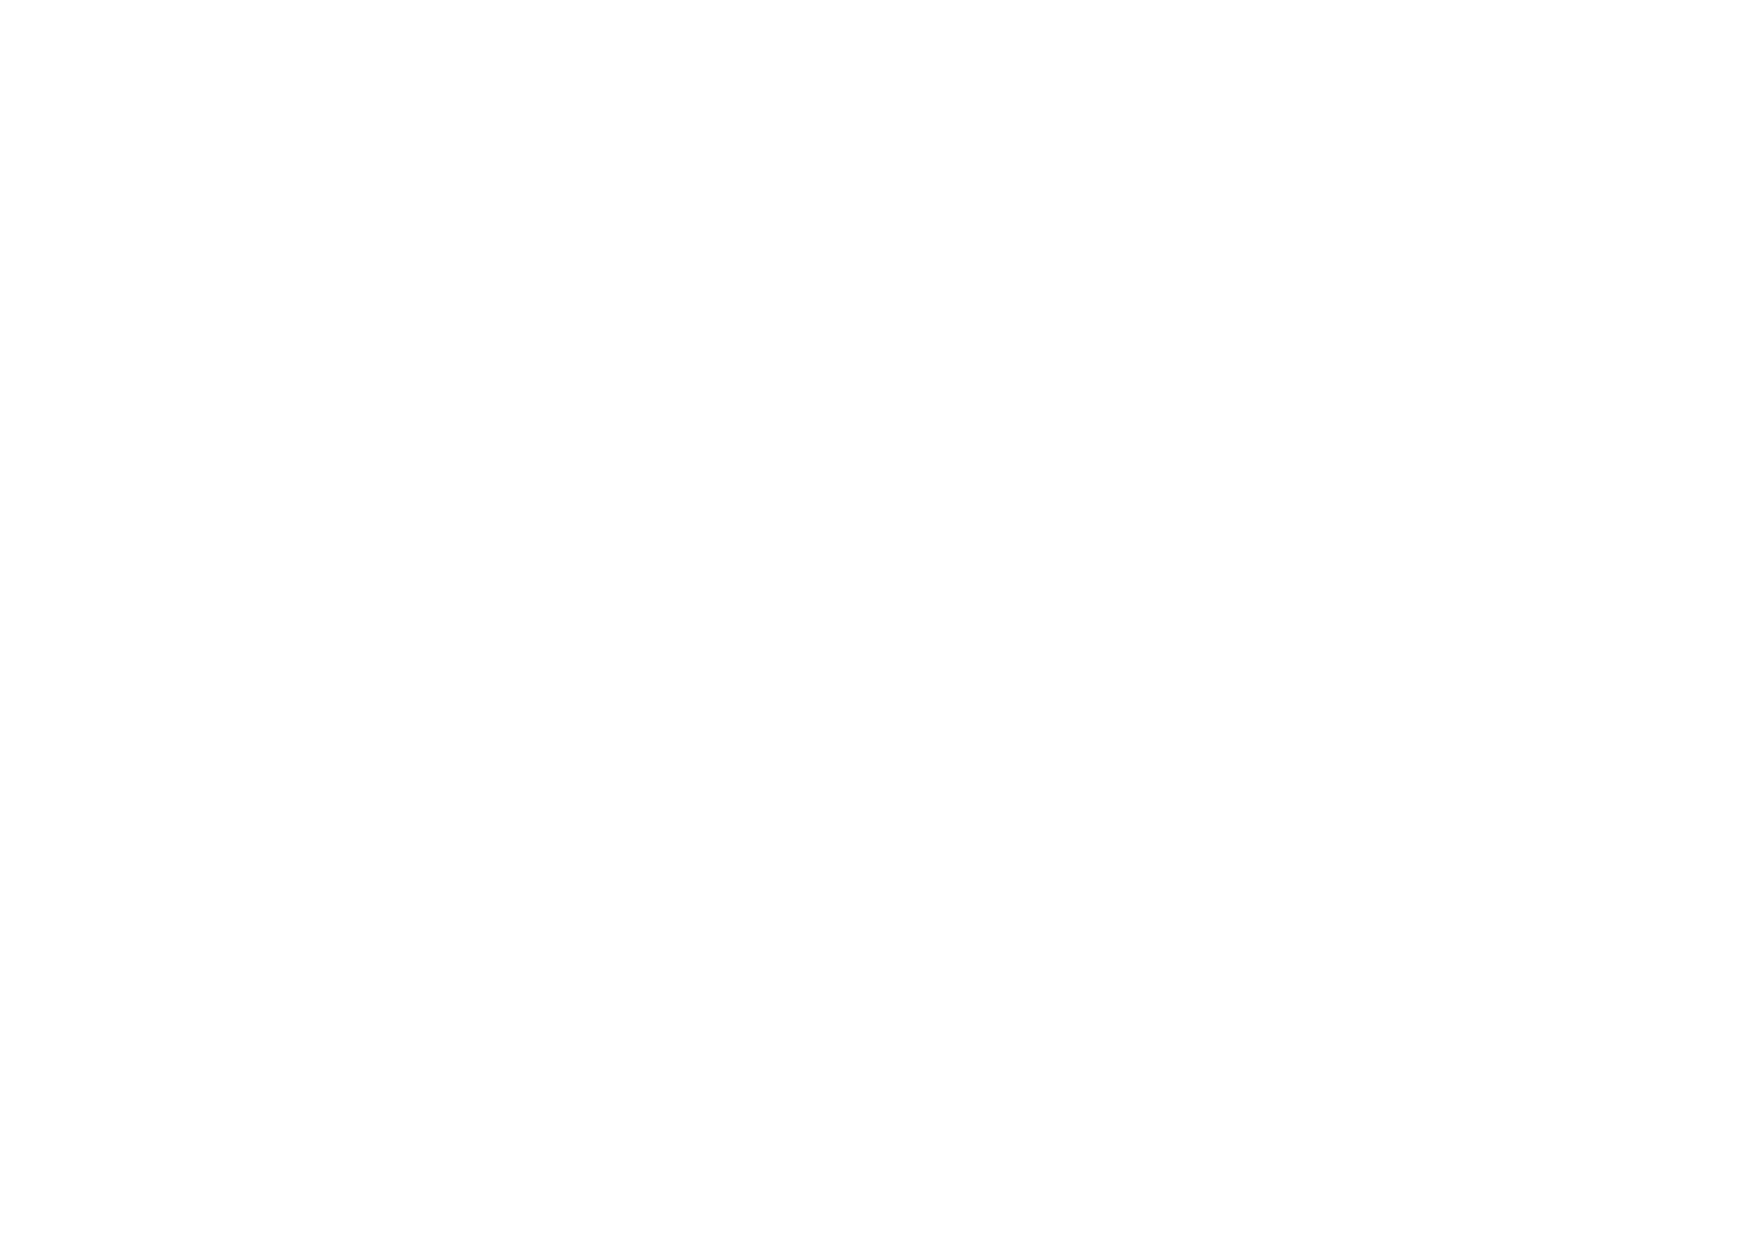 Brown hotels logo homepage